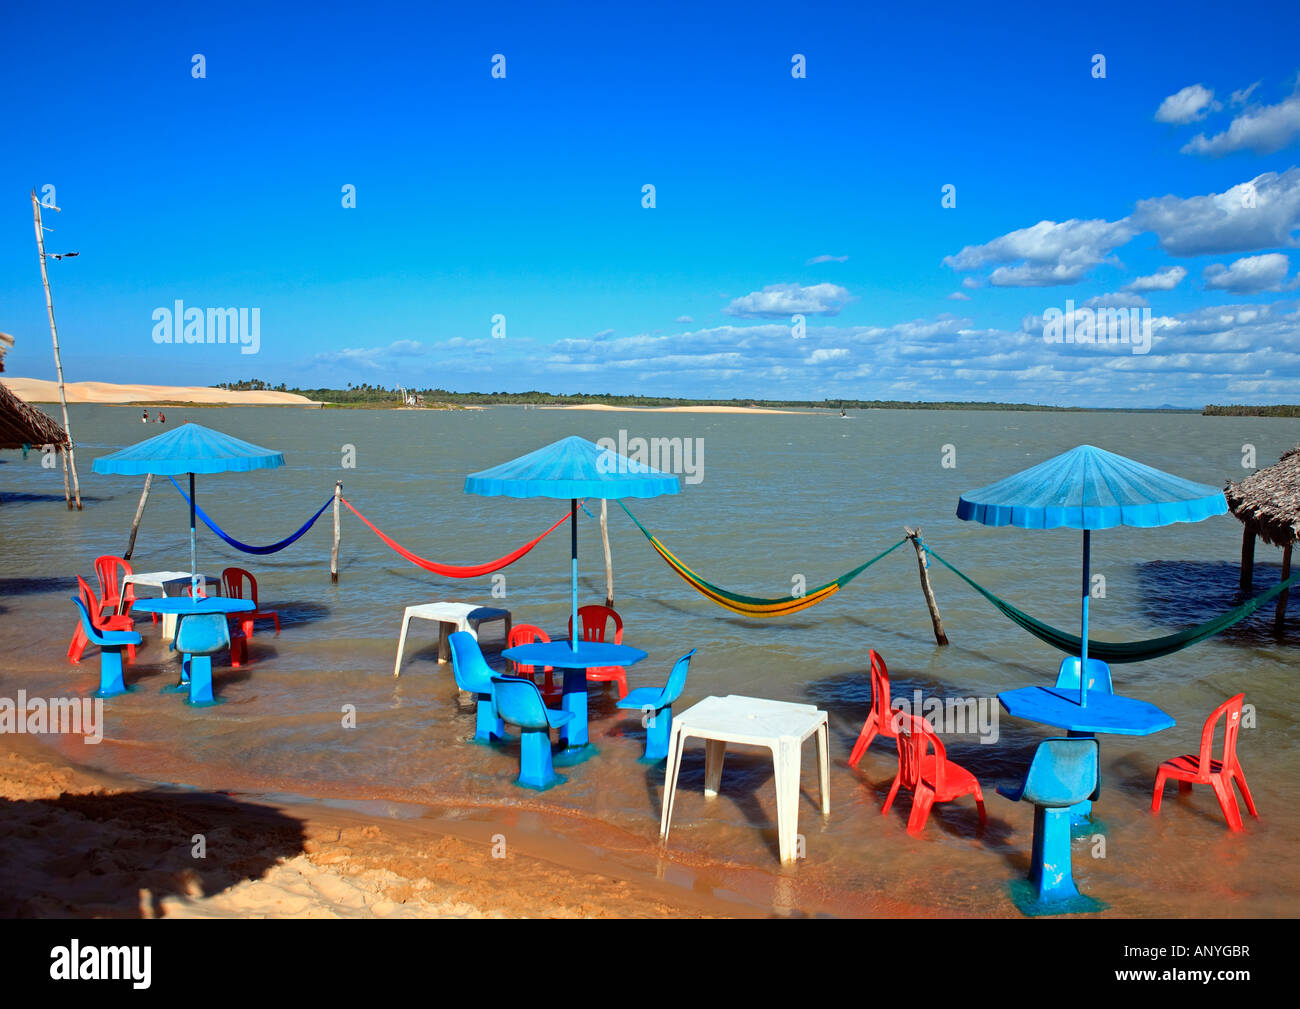 lagoon beach of tatajuba near jericoacoara in ceara state in brazil Stock Photo